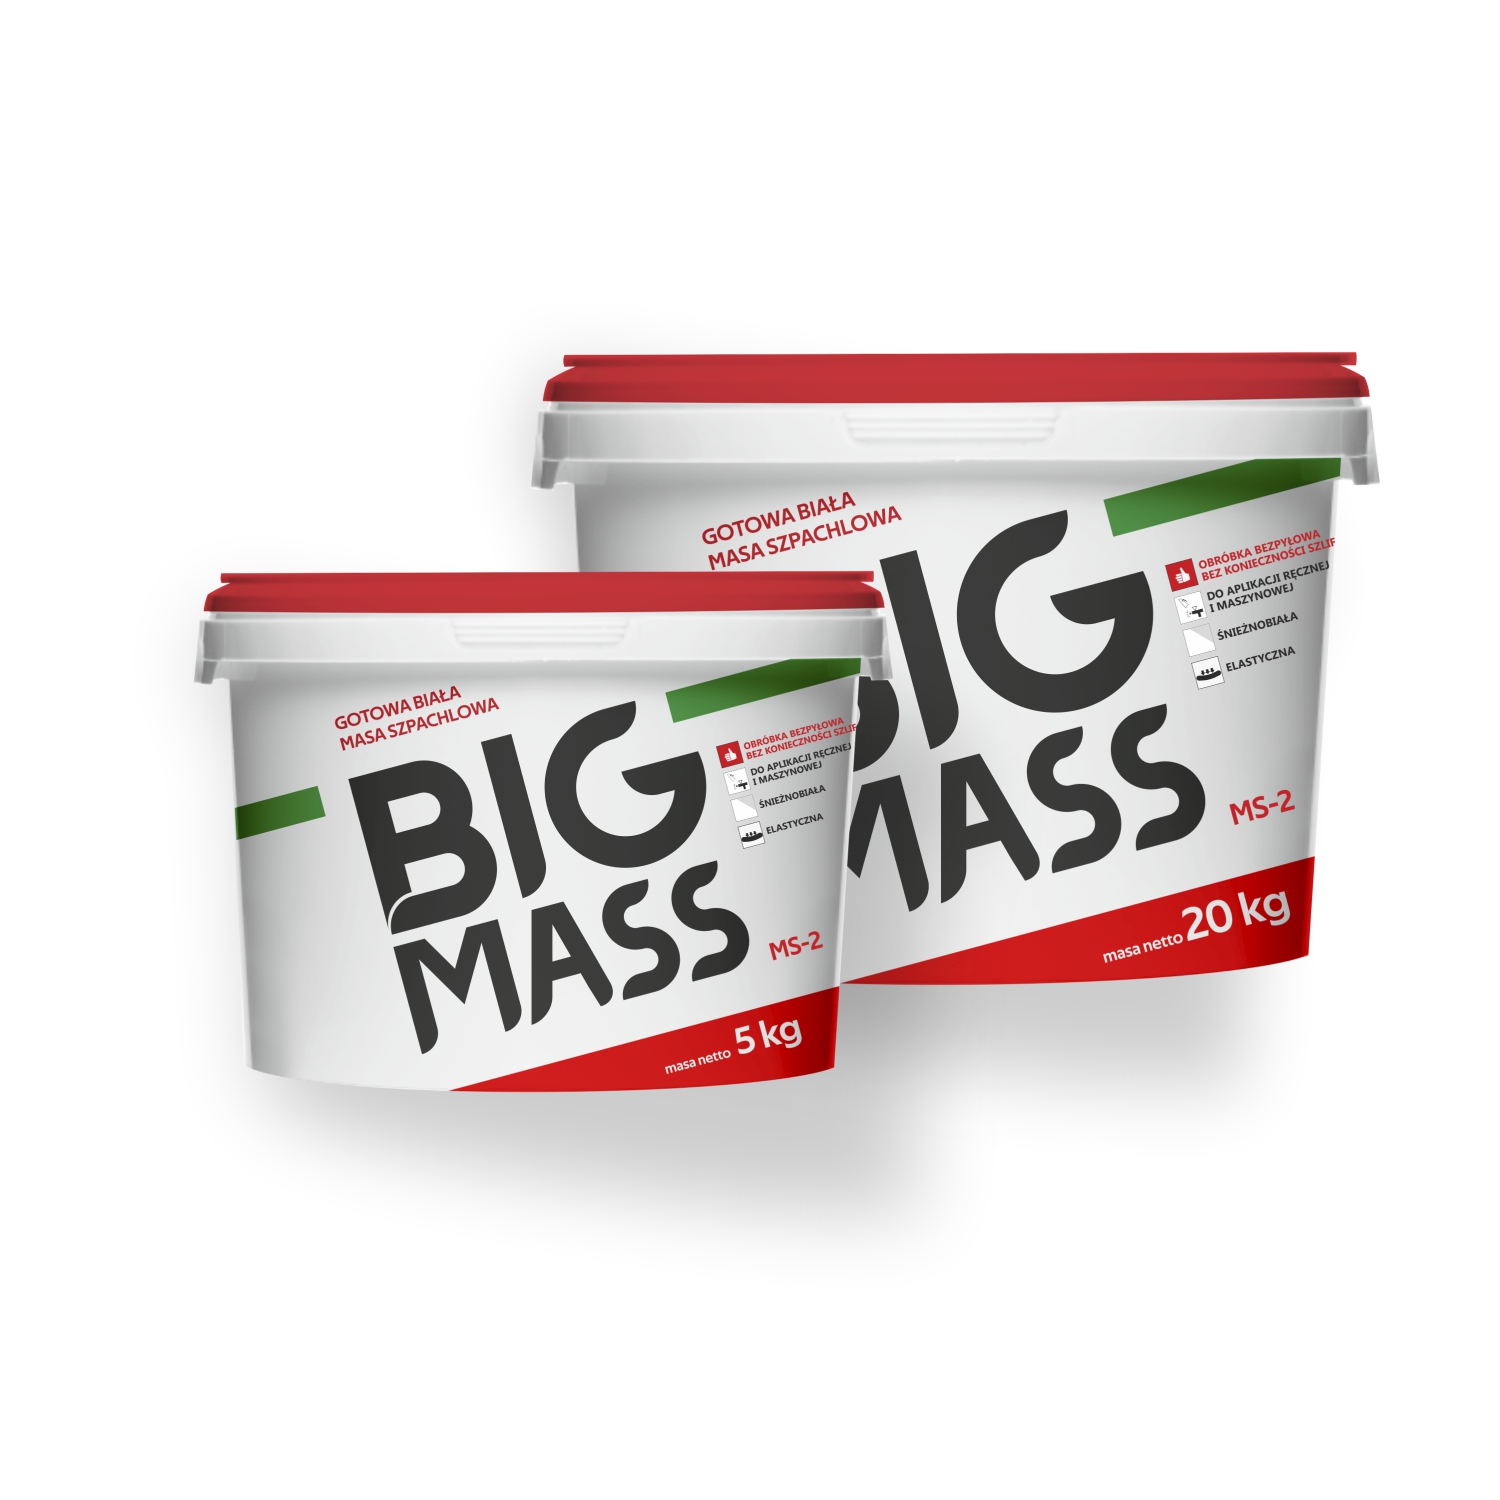 Deklaracja właściwości użytkowych - Gotowa biała masa szpachlowa BIG MASS MS-2